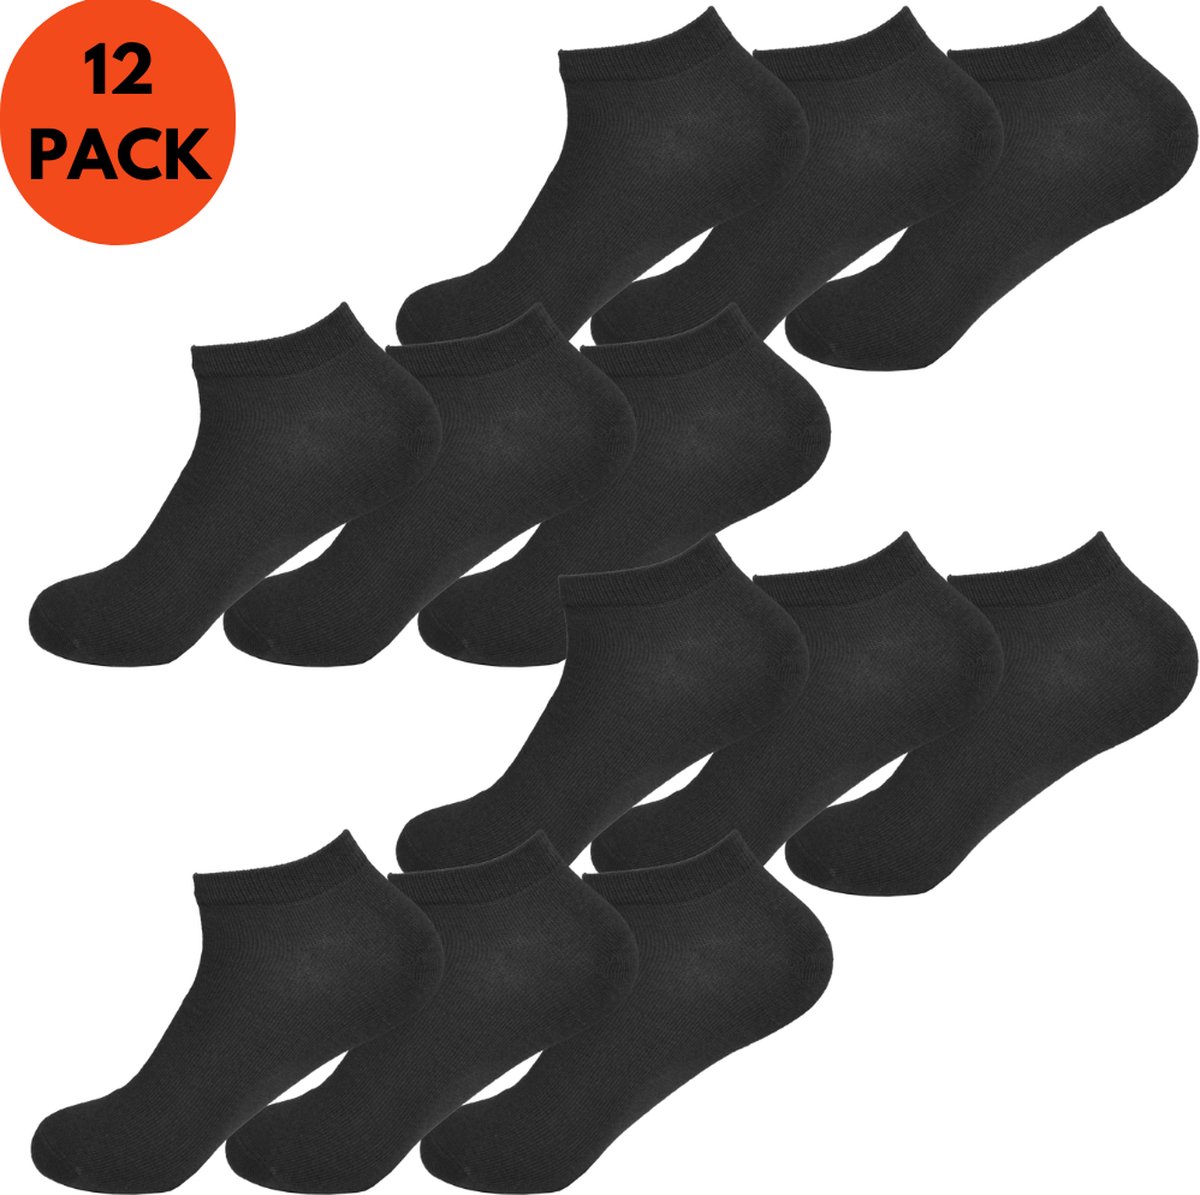 Enkelsokken Heren Dames | Katoen | Unisex | 12-Pack | Zwart | Maat 35-40 | Korte Sokken | Enkelsokken Unisex - Merkloos